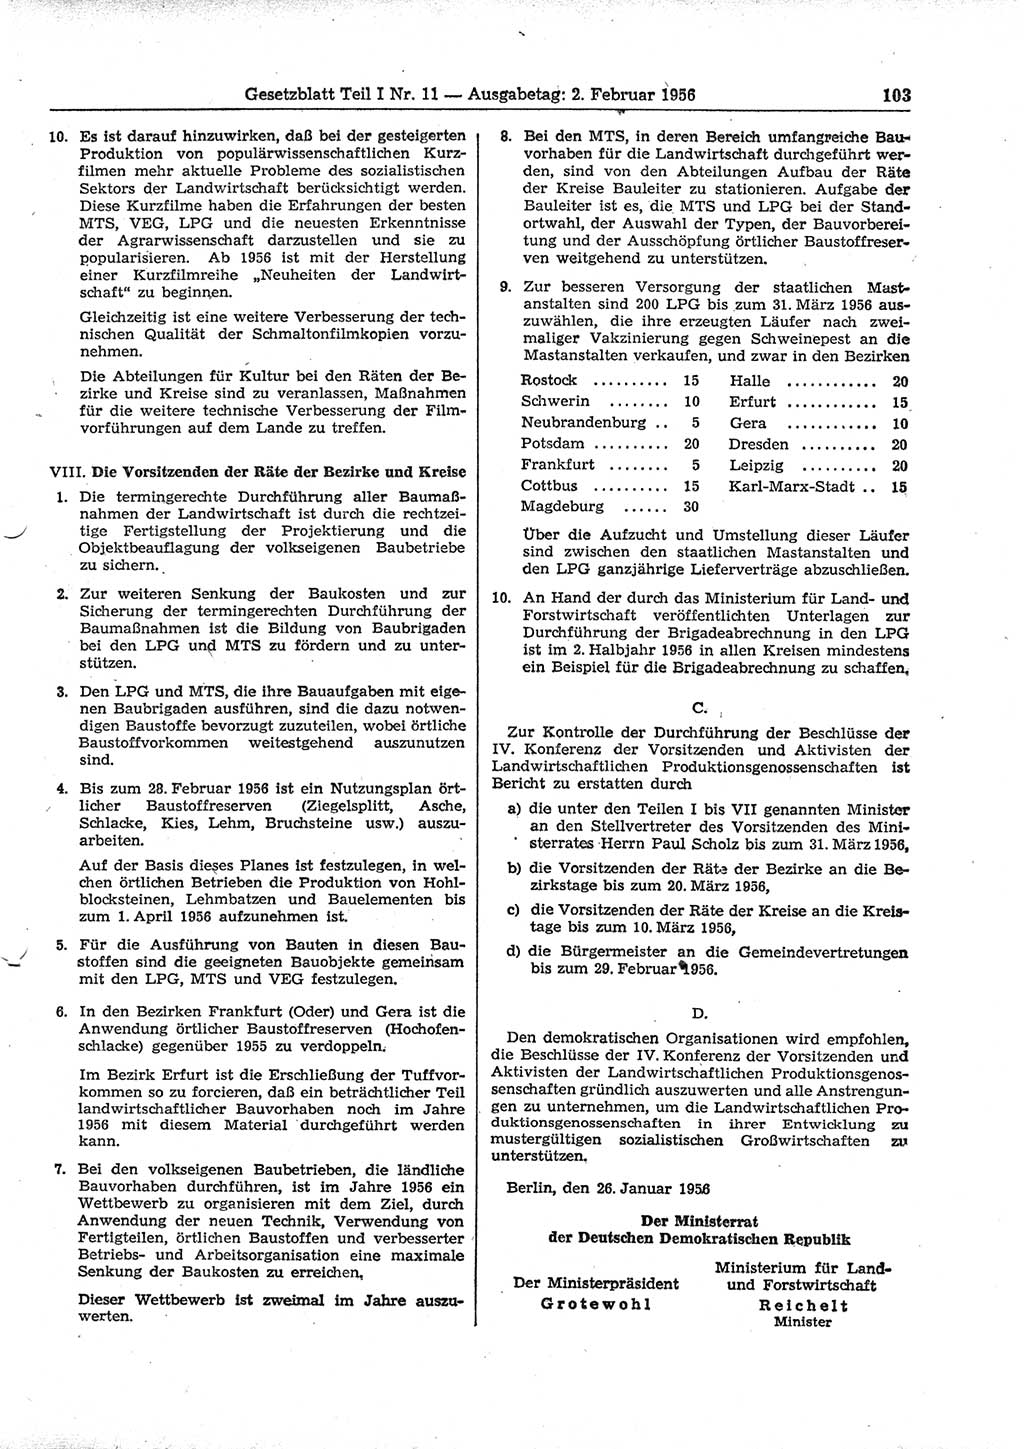 Gesetzblatt (GBl.) der Deutschen Demokratischen Republik (DDR) Teil Ⅰ 1956, Seite 103 (GBl. DDR Ⅰ 1956, S. 103)